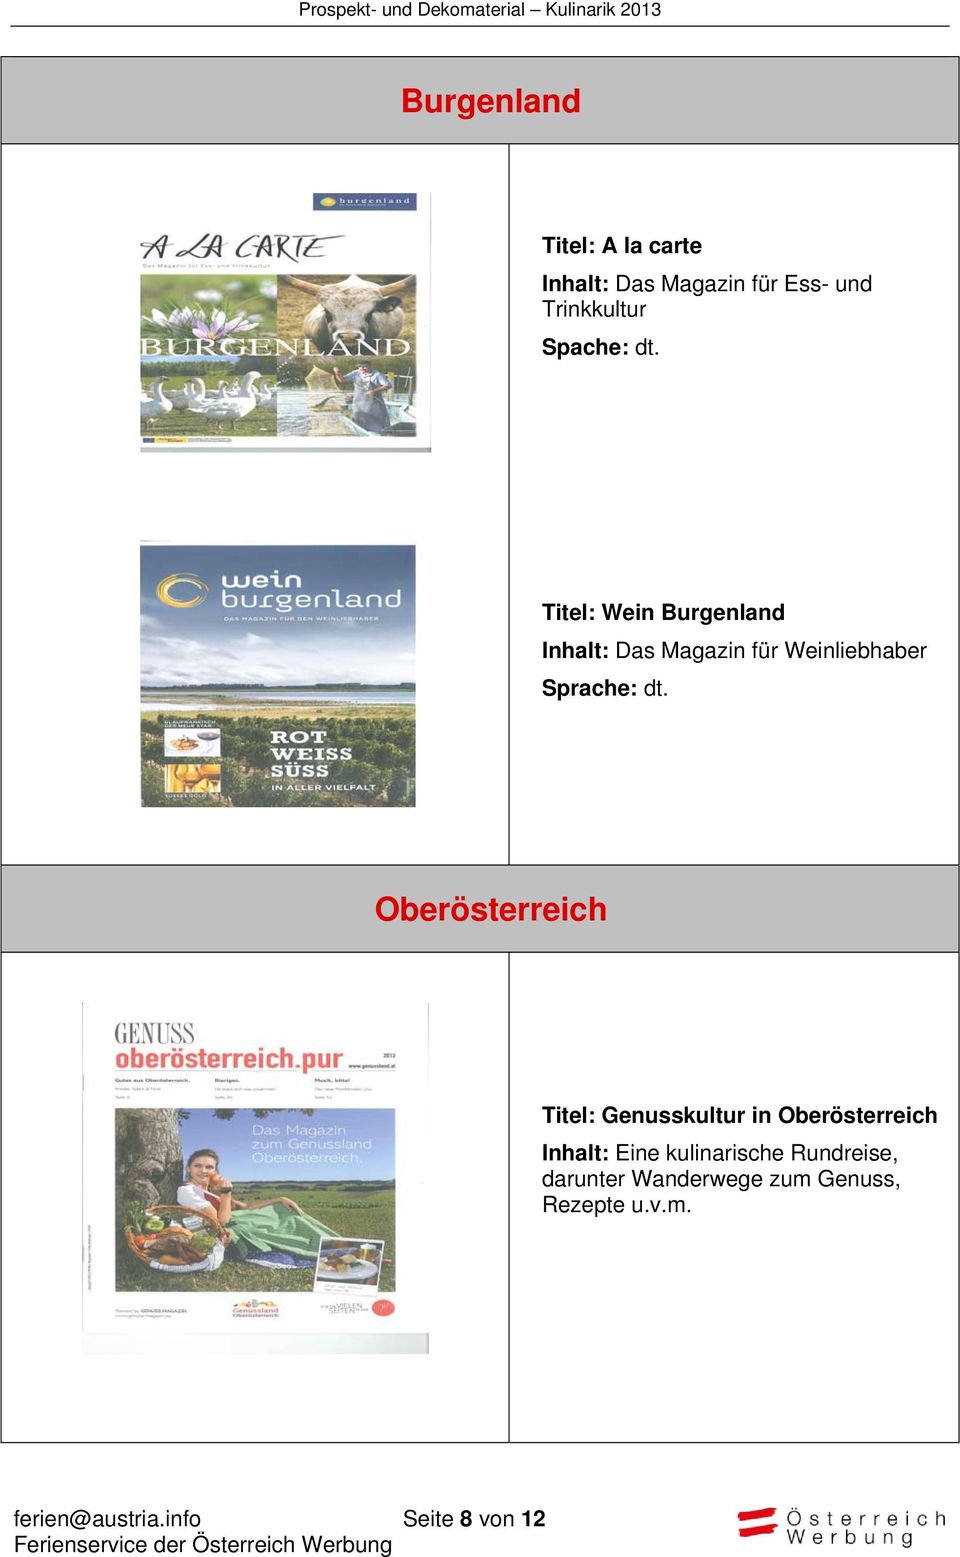 Titel: Wein Burgenland Inhalt: Das Magazin für Weinliebhaber Oberösterreich